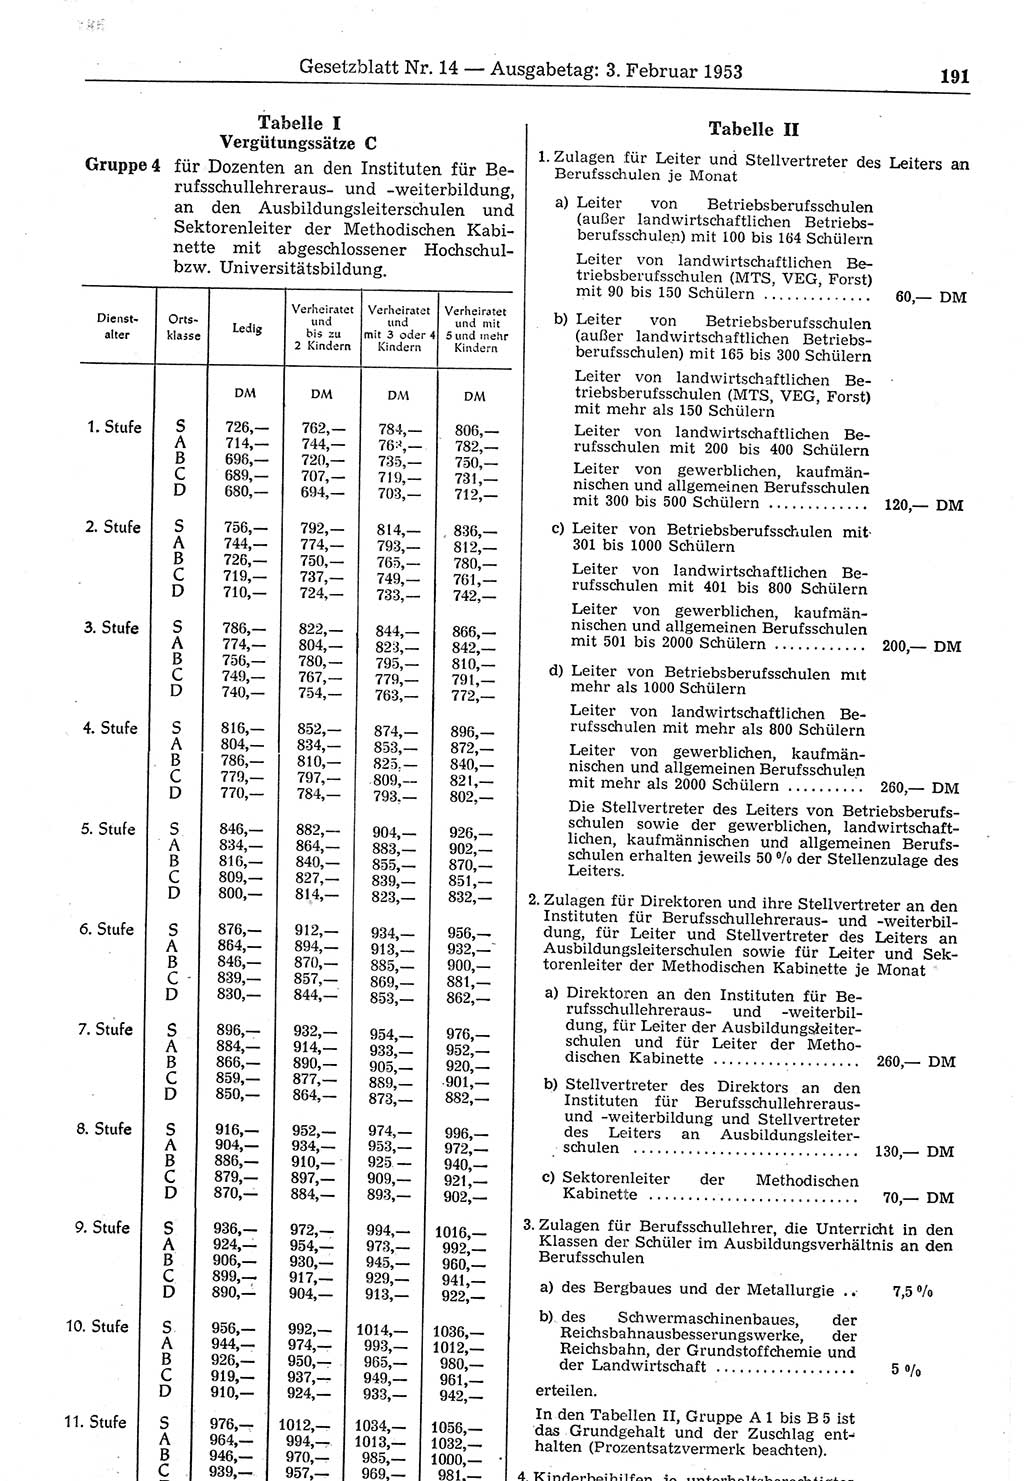 Gesetzblatt (GBl.) der Deutschen Demokratischen Republik (DDR) 1953, Seite 191 (GBl. DDR 1953, S. 191)